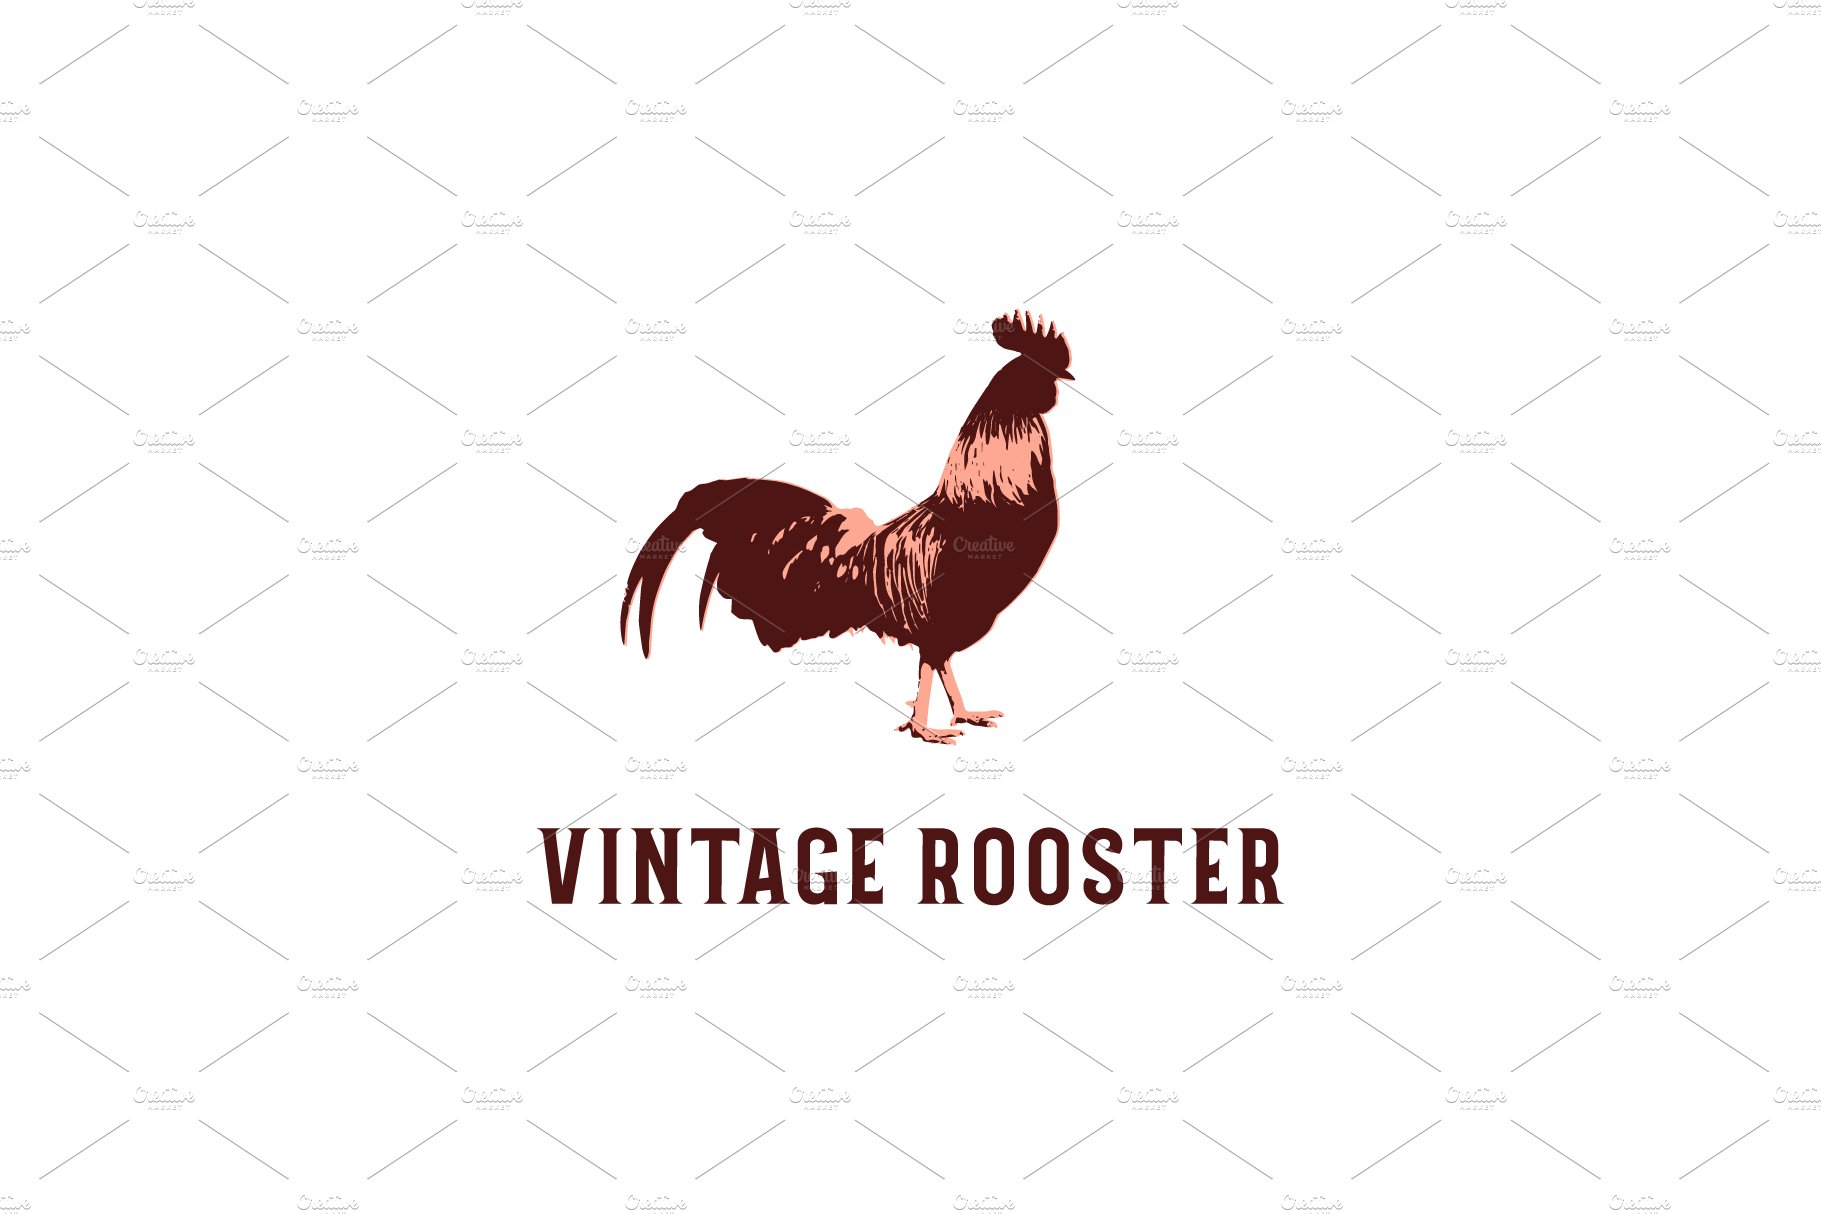 Vintage Rooster Logo Design cover image.